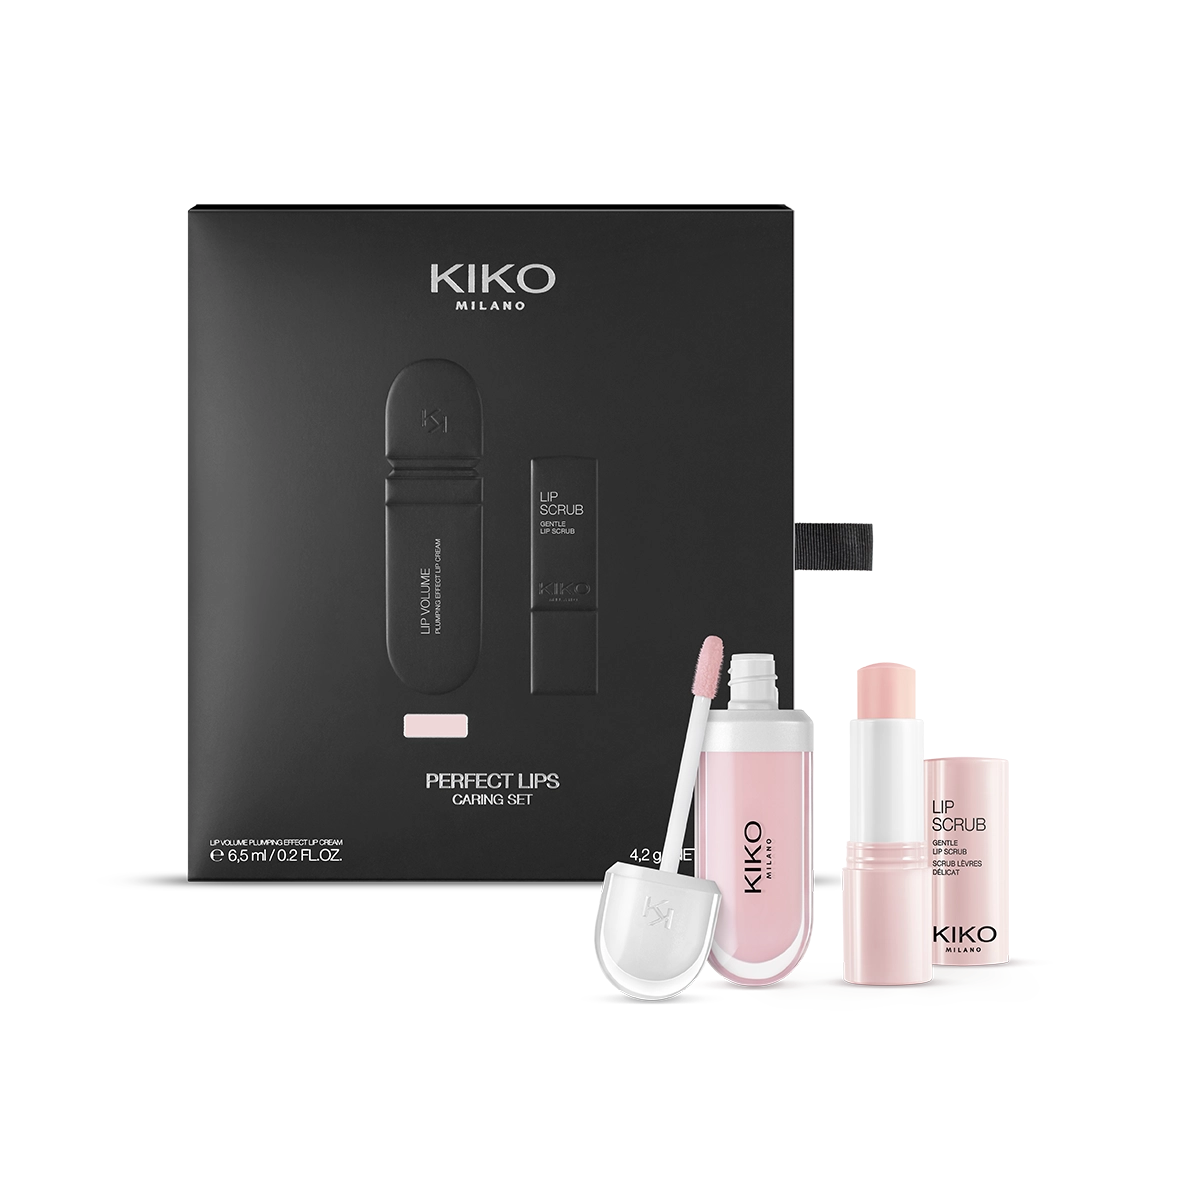 Exclusive KIKO Sets & Kits